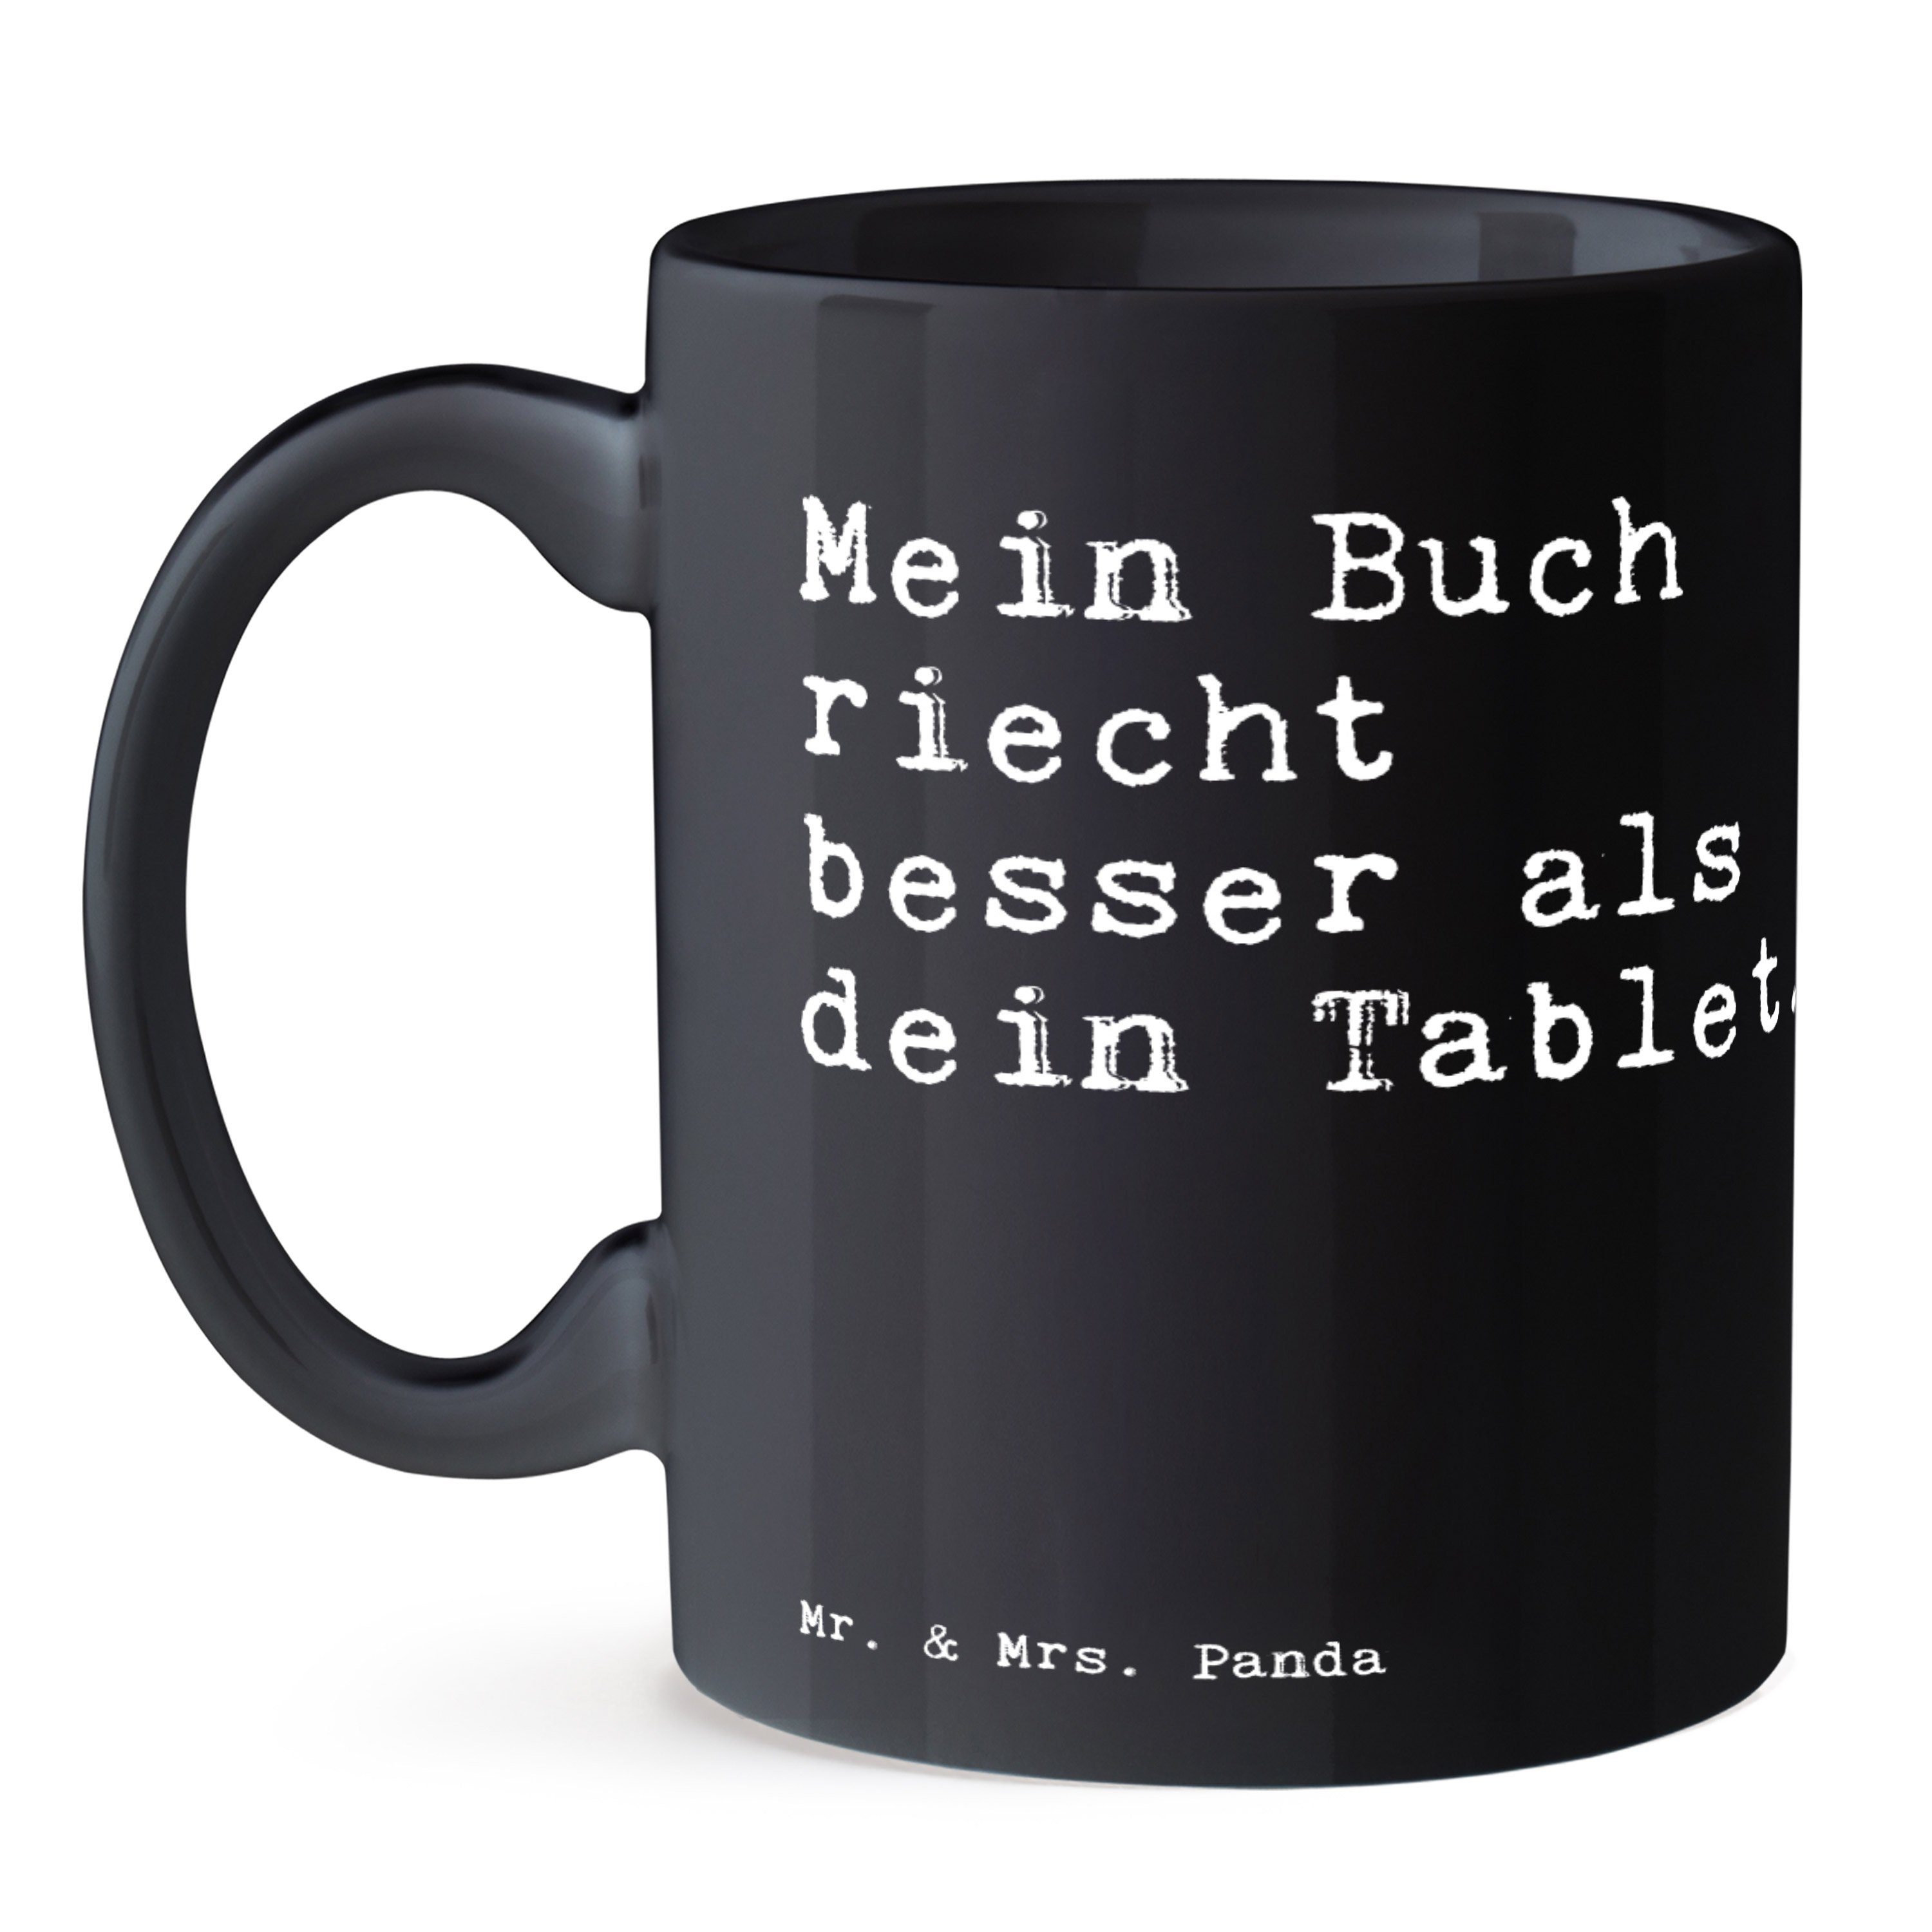 Tee, Keramik Tasse Panda Buch & Mrs. besser... Geschenk, Becher, Schwarz riecht - Schwarz Spruch, - Mr. Mein